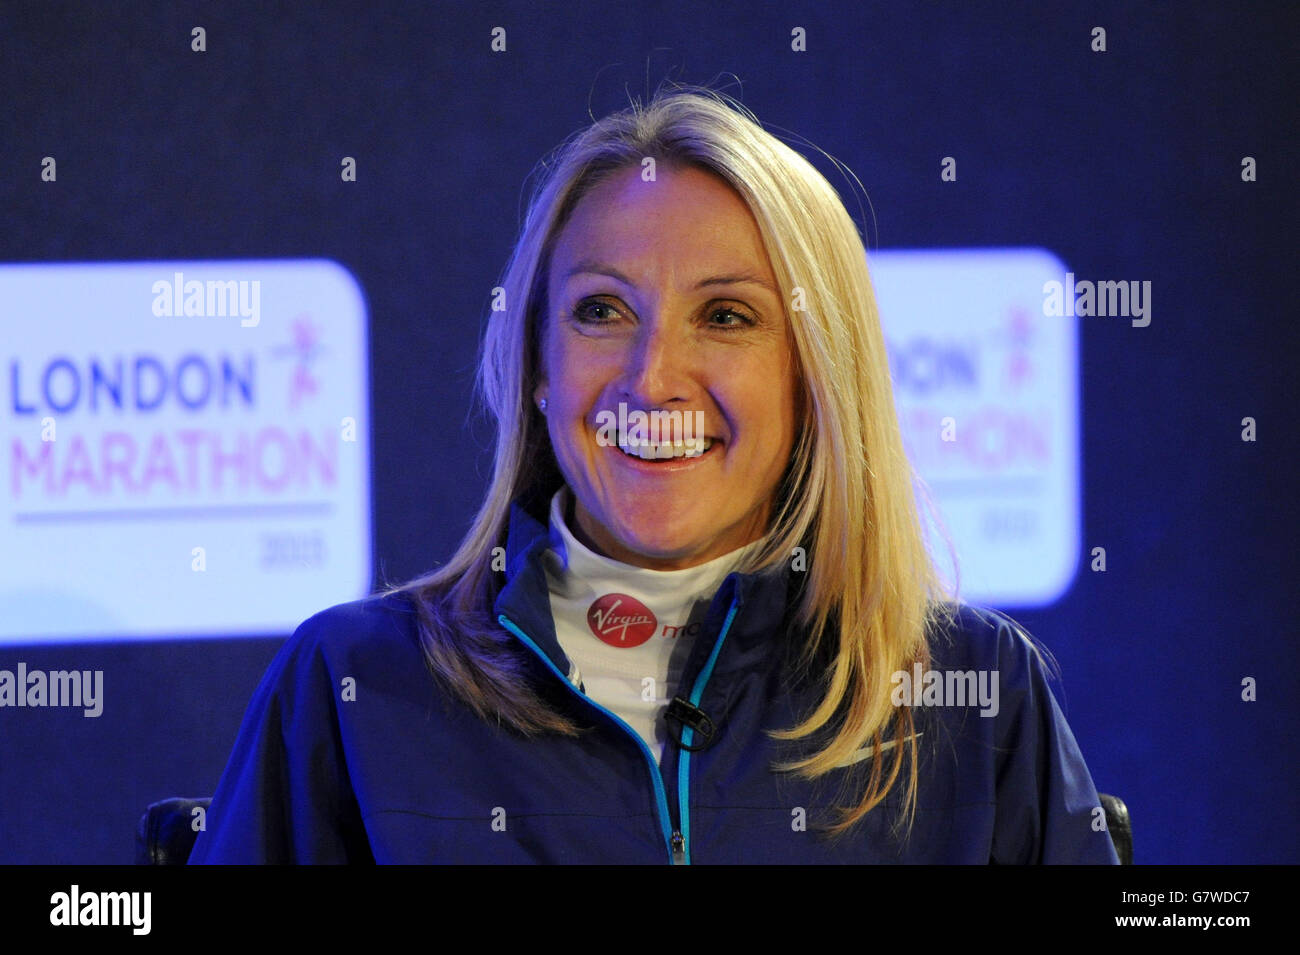 Athlétisme - Virgin Money London Marathon 2015 - Paula Radcliffe Press Conference and Photocall - Tower Hotel.Paula Radcliffe lors d'une conférence de presse en prévision du marathon de Londres Virgin Money 2015 à l'hôtel Tower, Londres. Banque D'Images